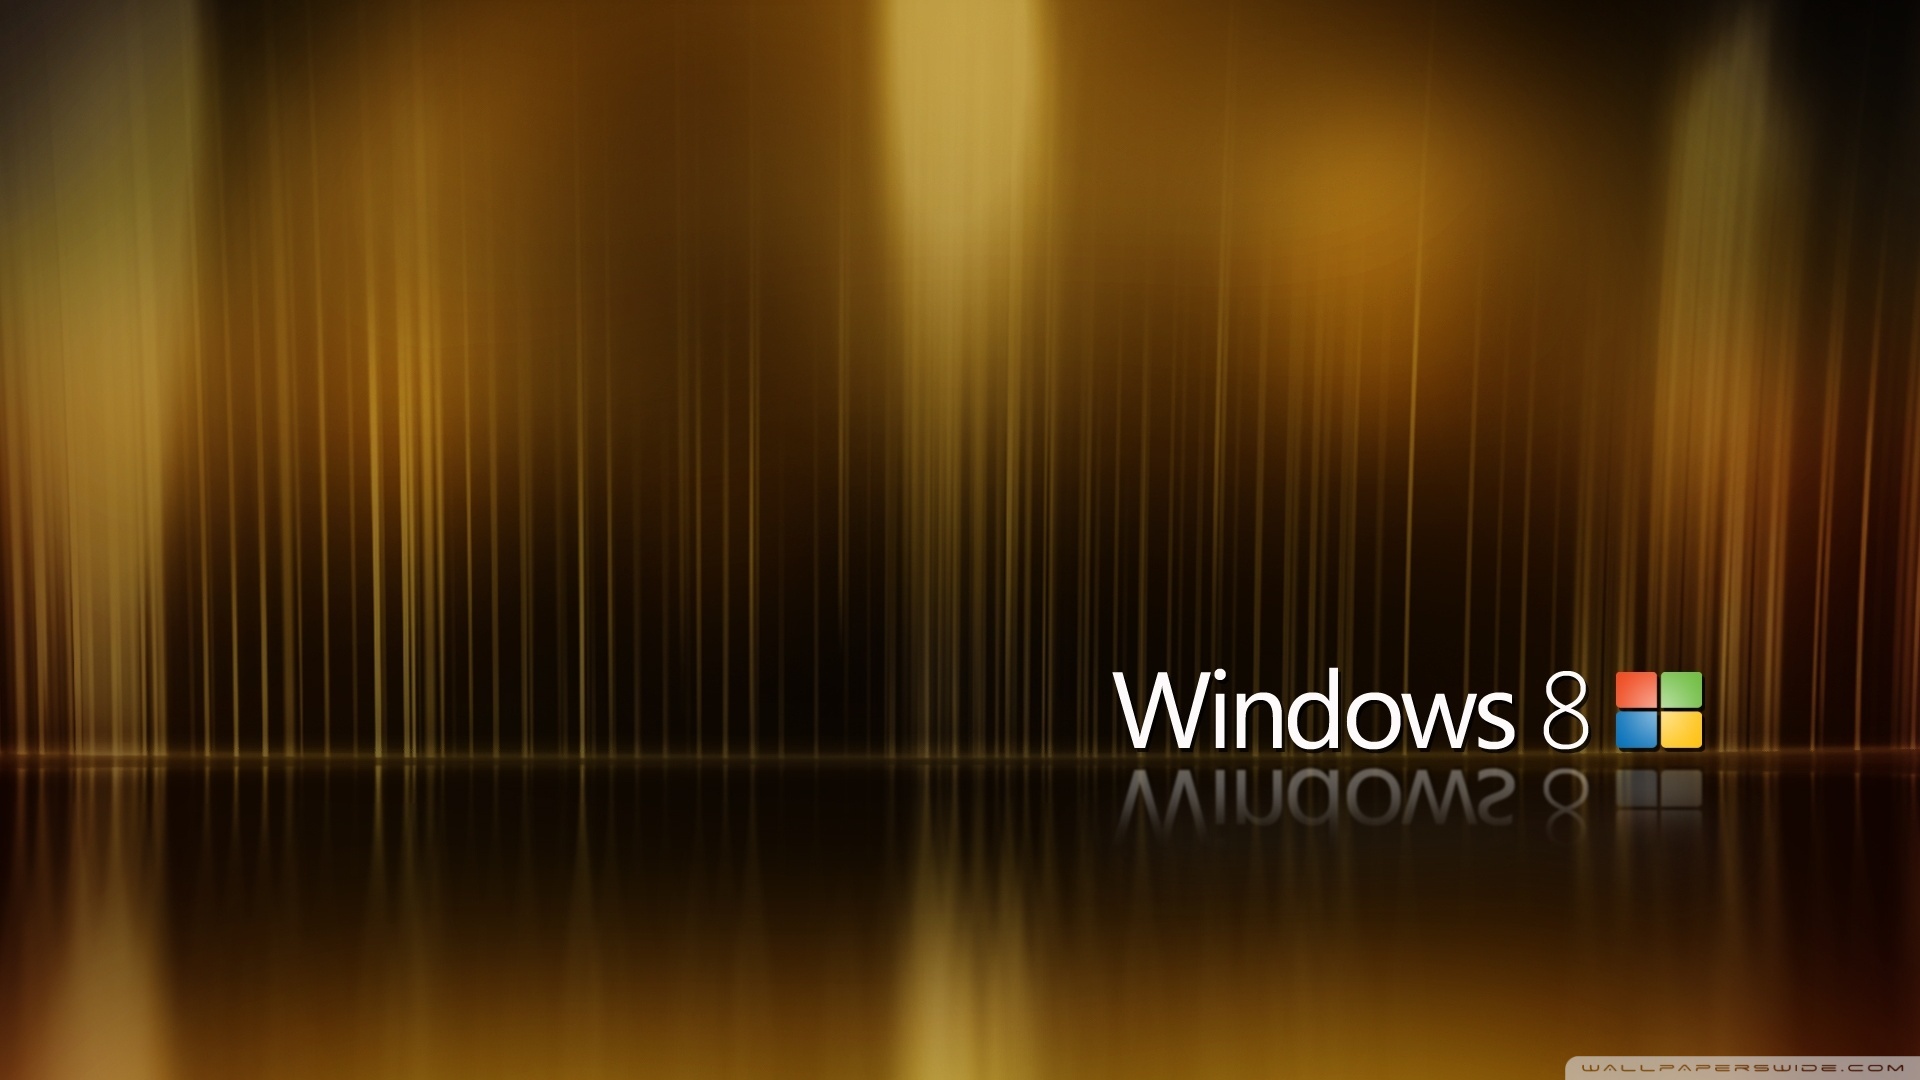 thèmes de fond d'écran windows 8.1,réflexion,lumière,texte,jaune,ciel